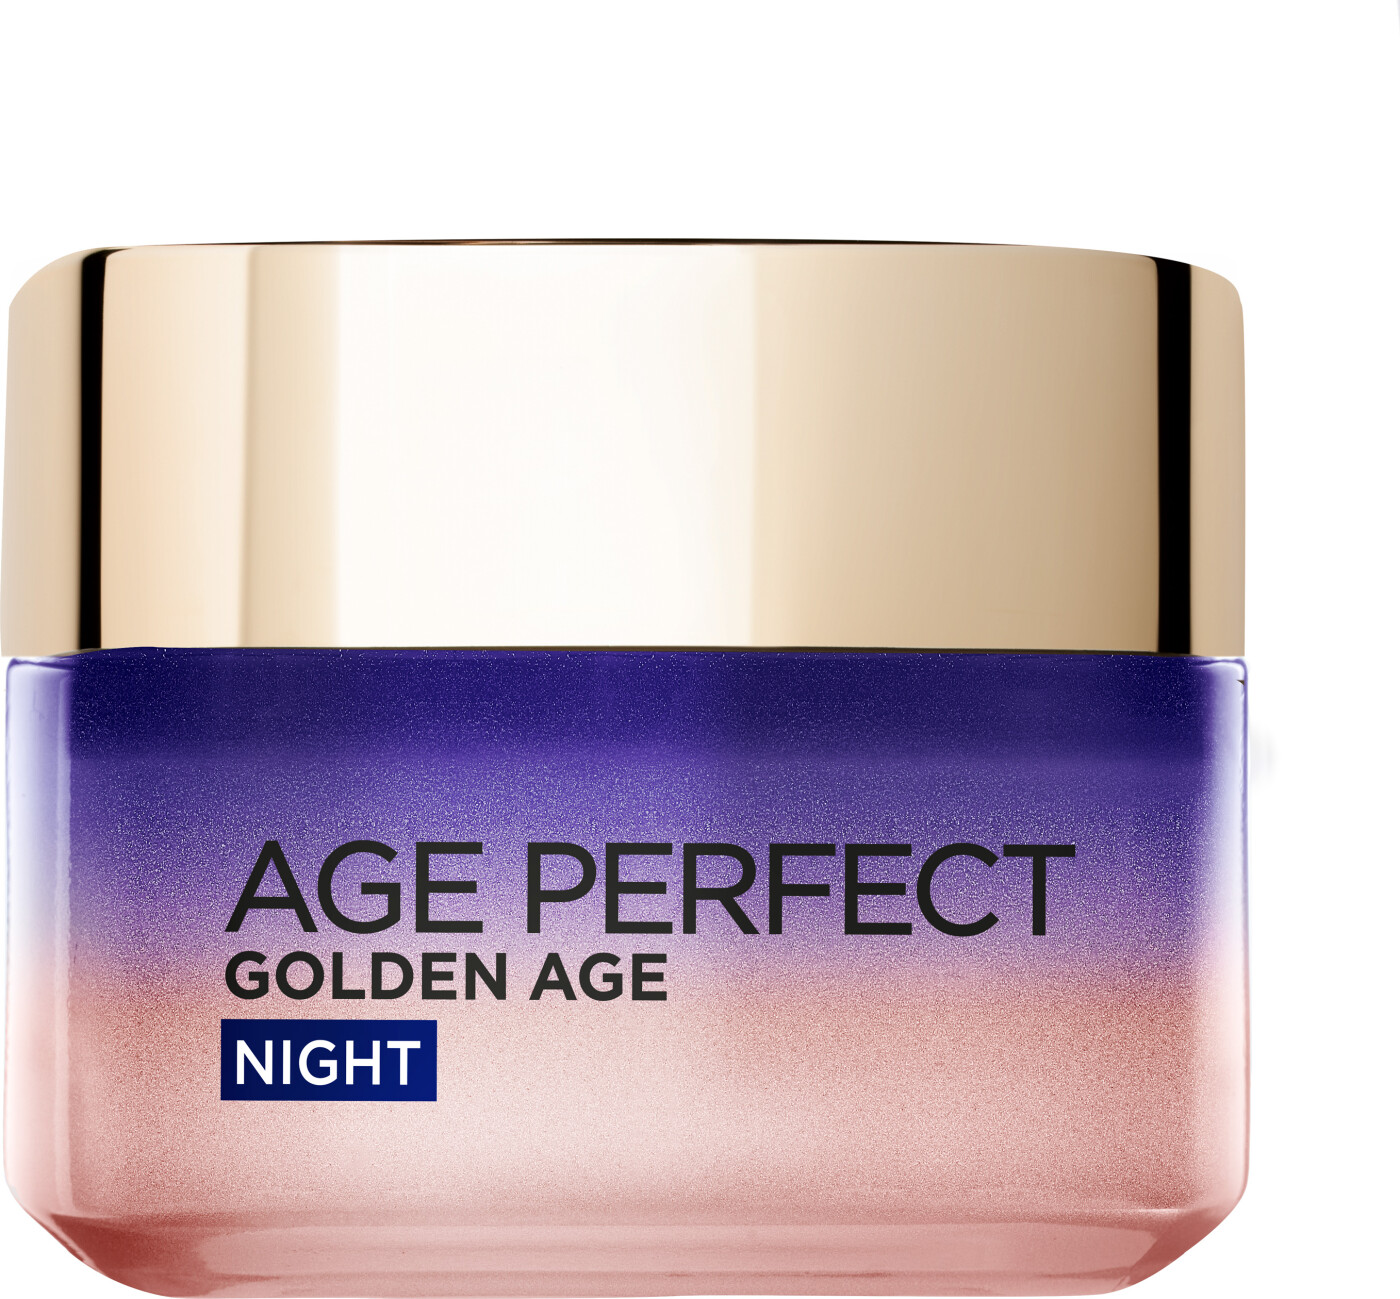 Billede af L'oréal Age Perfect Golden Age Night Cream - 50 Ml. hos Gucca.dk